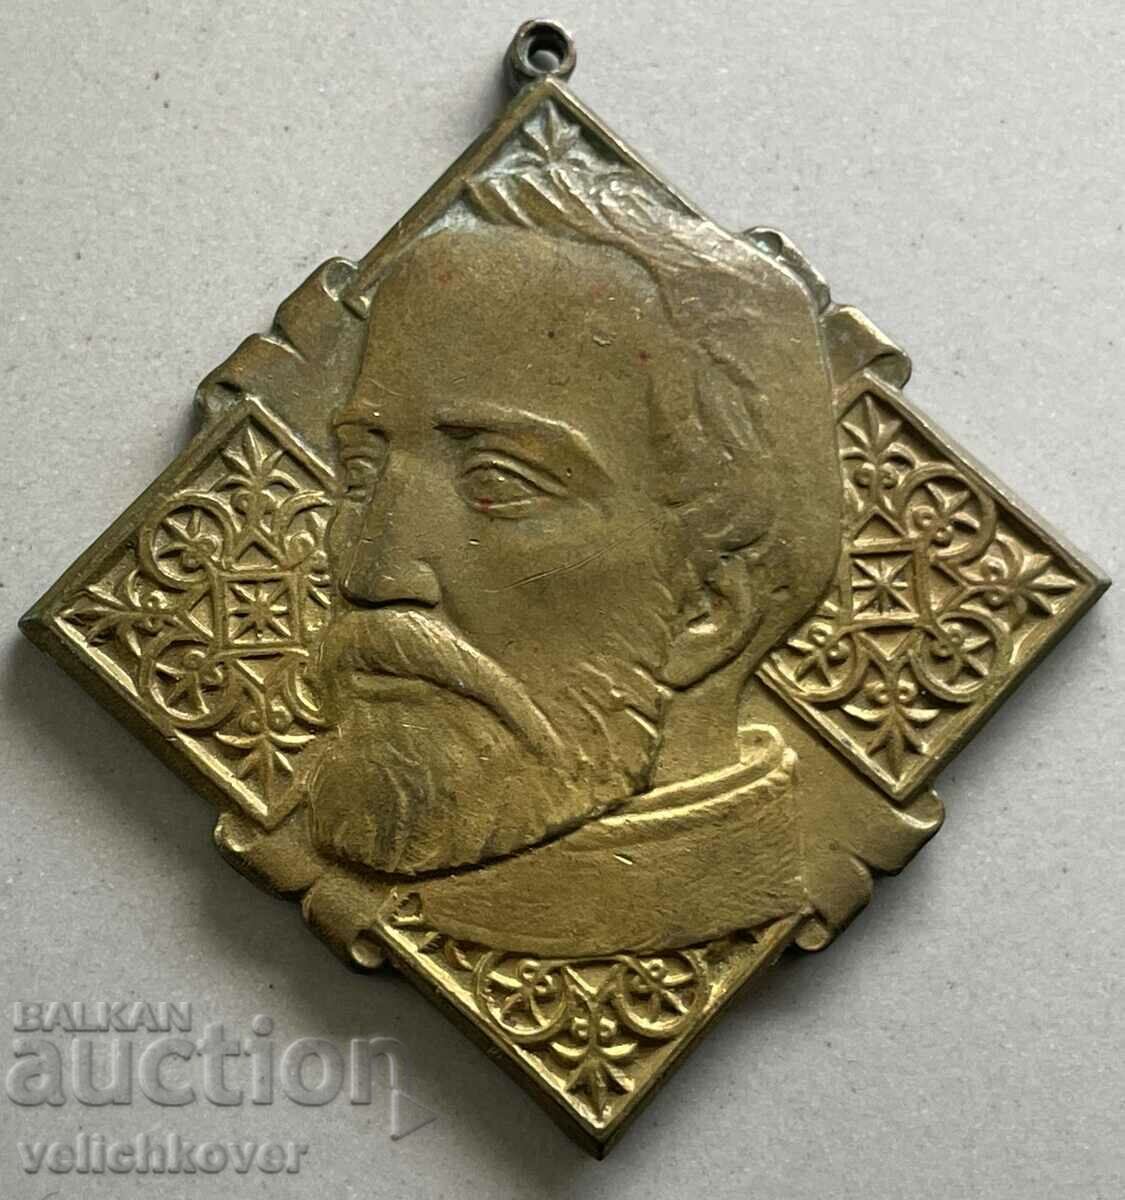 34361 Βουλγαρία μετάλλιο Petar Parcevich και το οικόσημό του